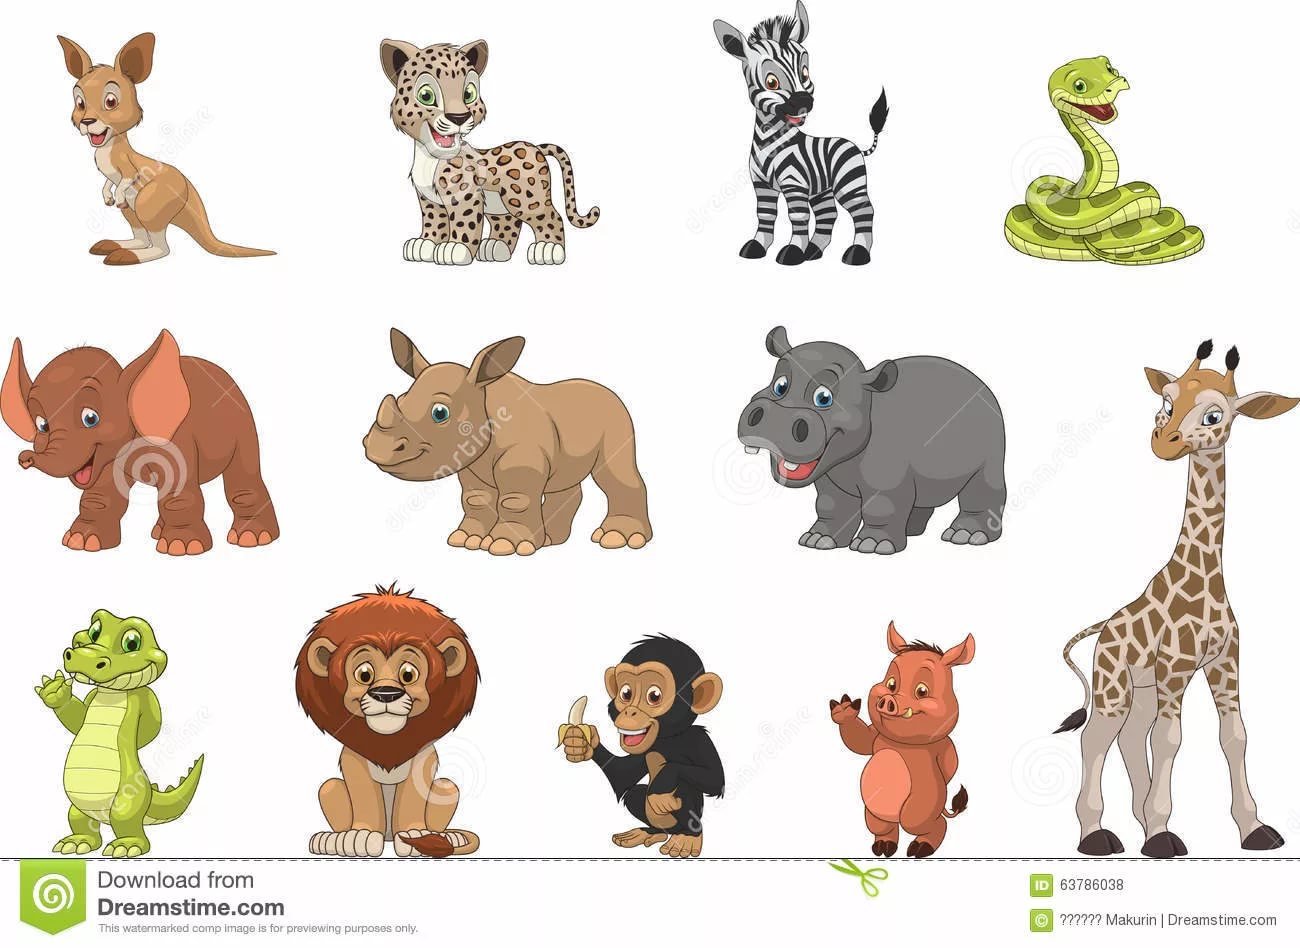 Рисунки для детей животных в одном стиле